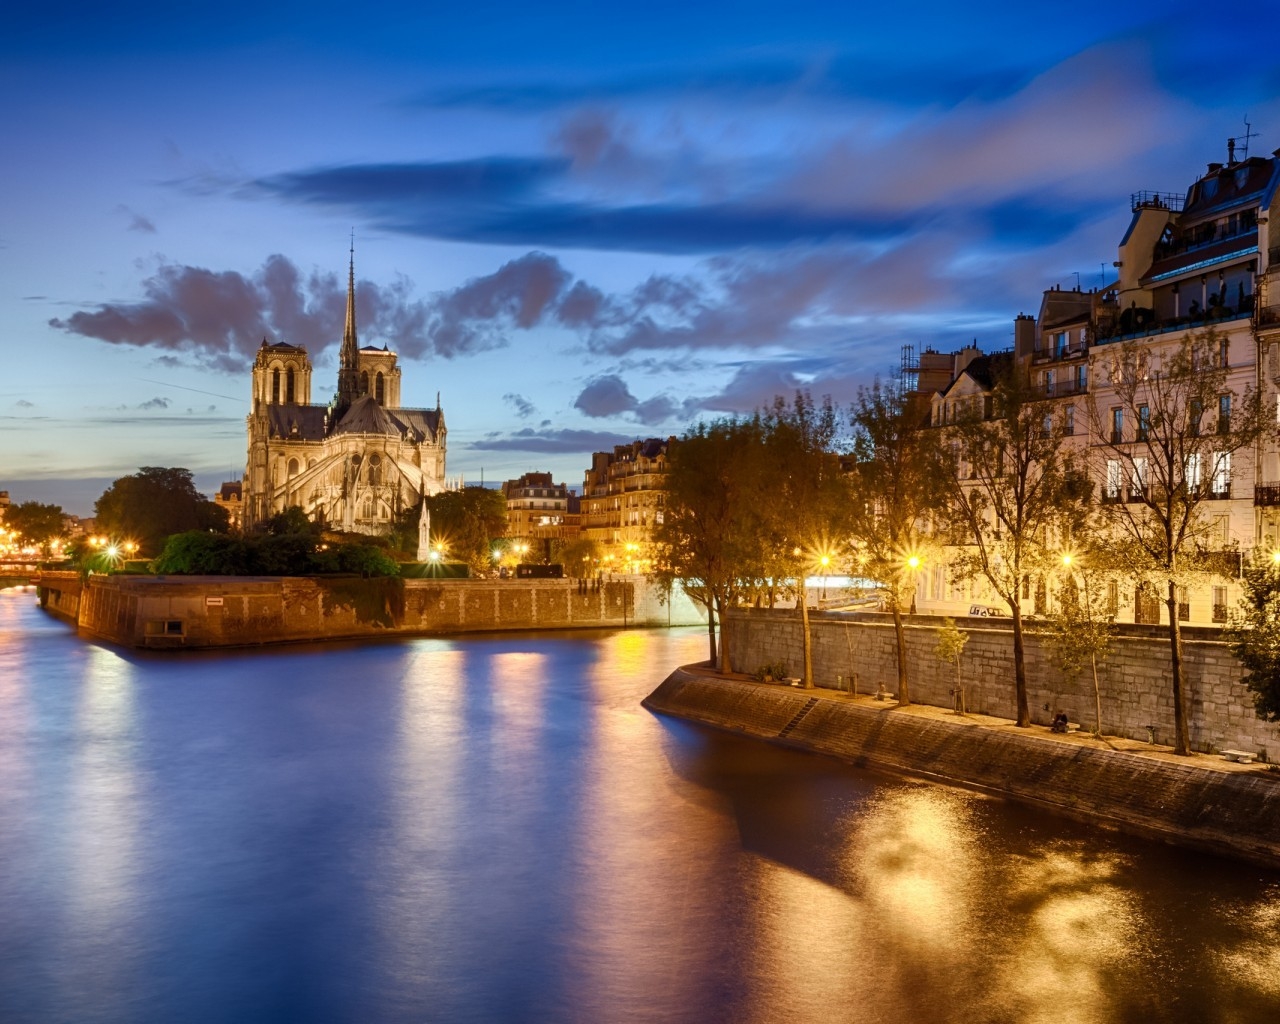 View of Notre Dame de Paris for 1280 x 1024 resolution